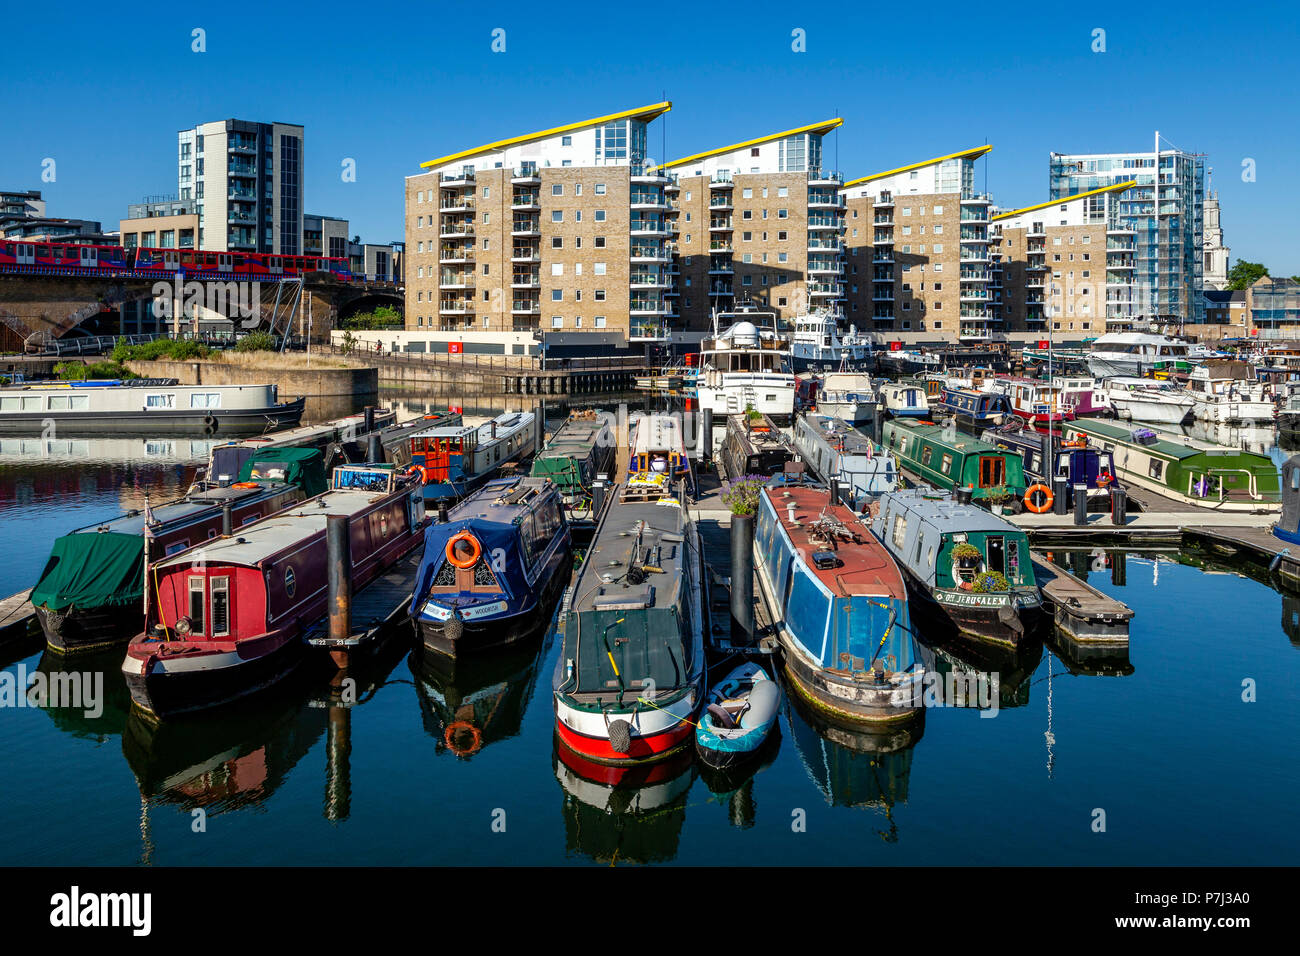 Limehouse Marina, Limehouse Basin, London, United Kingdom Stock Photo